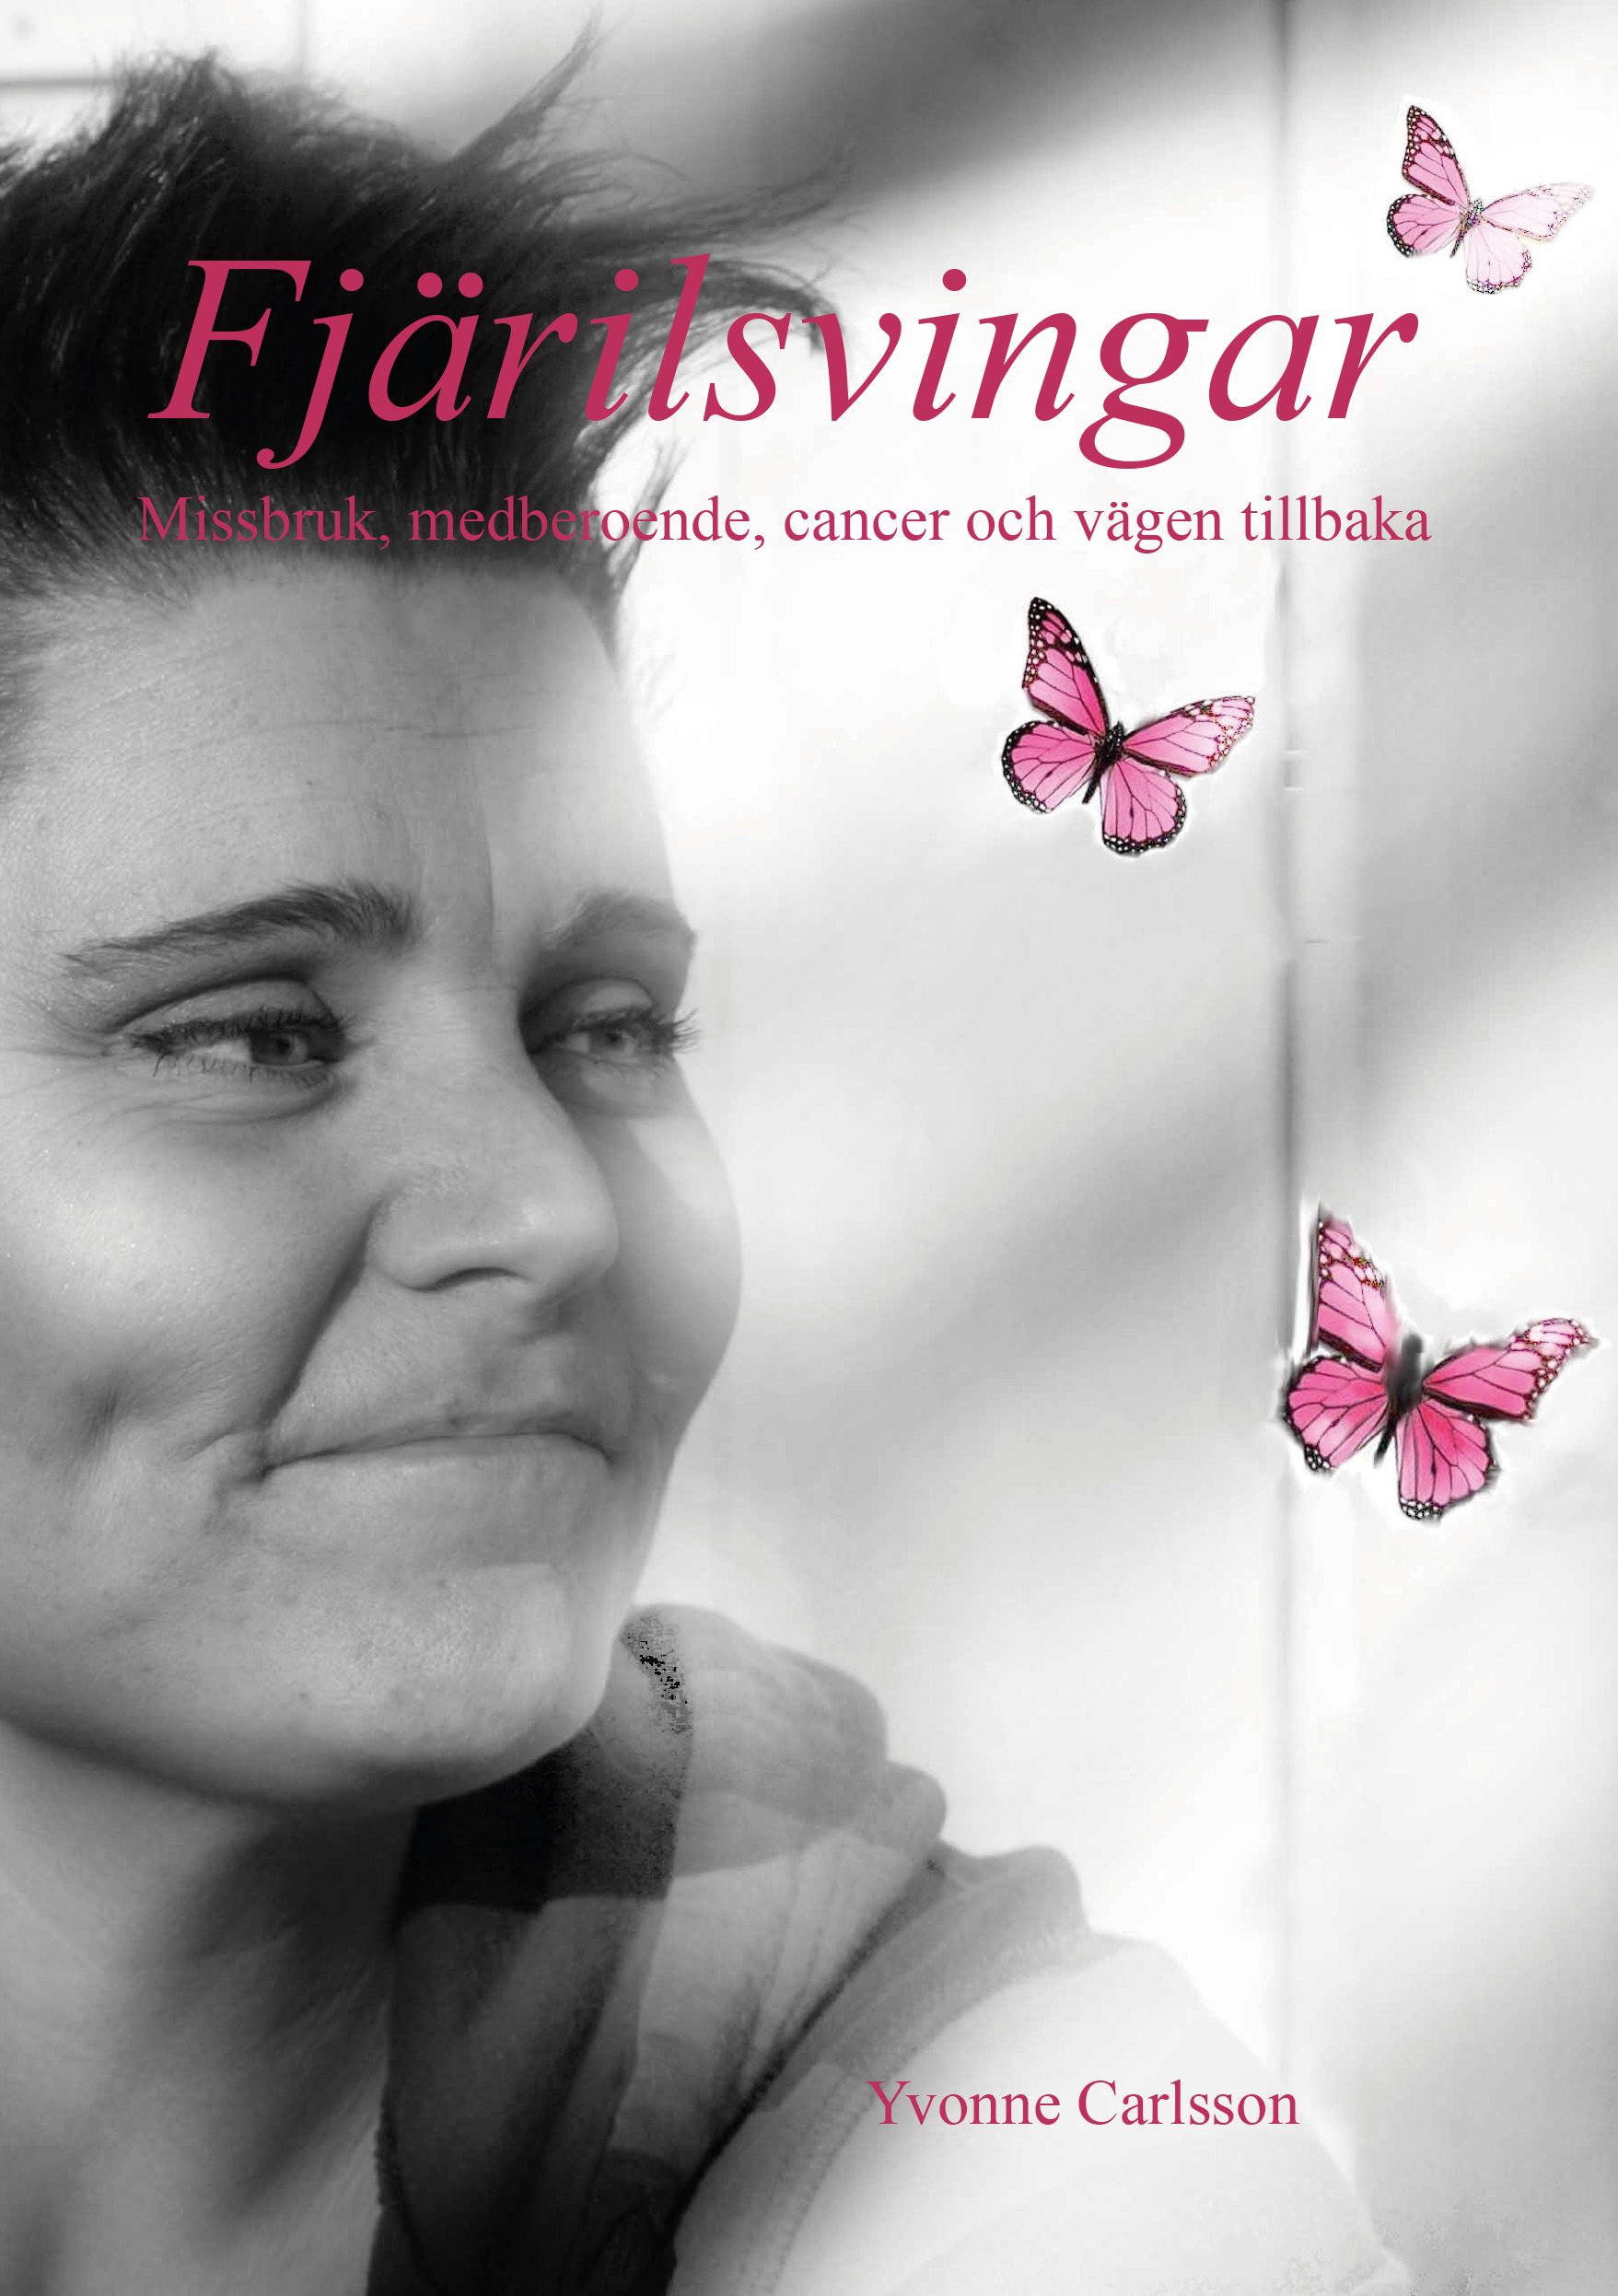 Fjärilsvingar - Missbruk, medberoende, cancer och vägen tillbaka, e-bog af Yvonne Carlsson